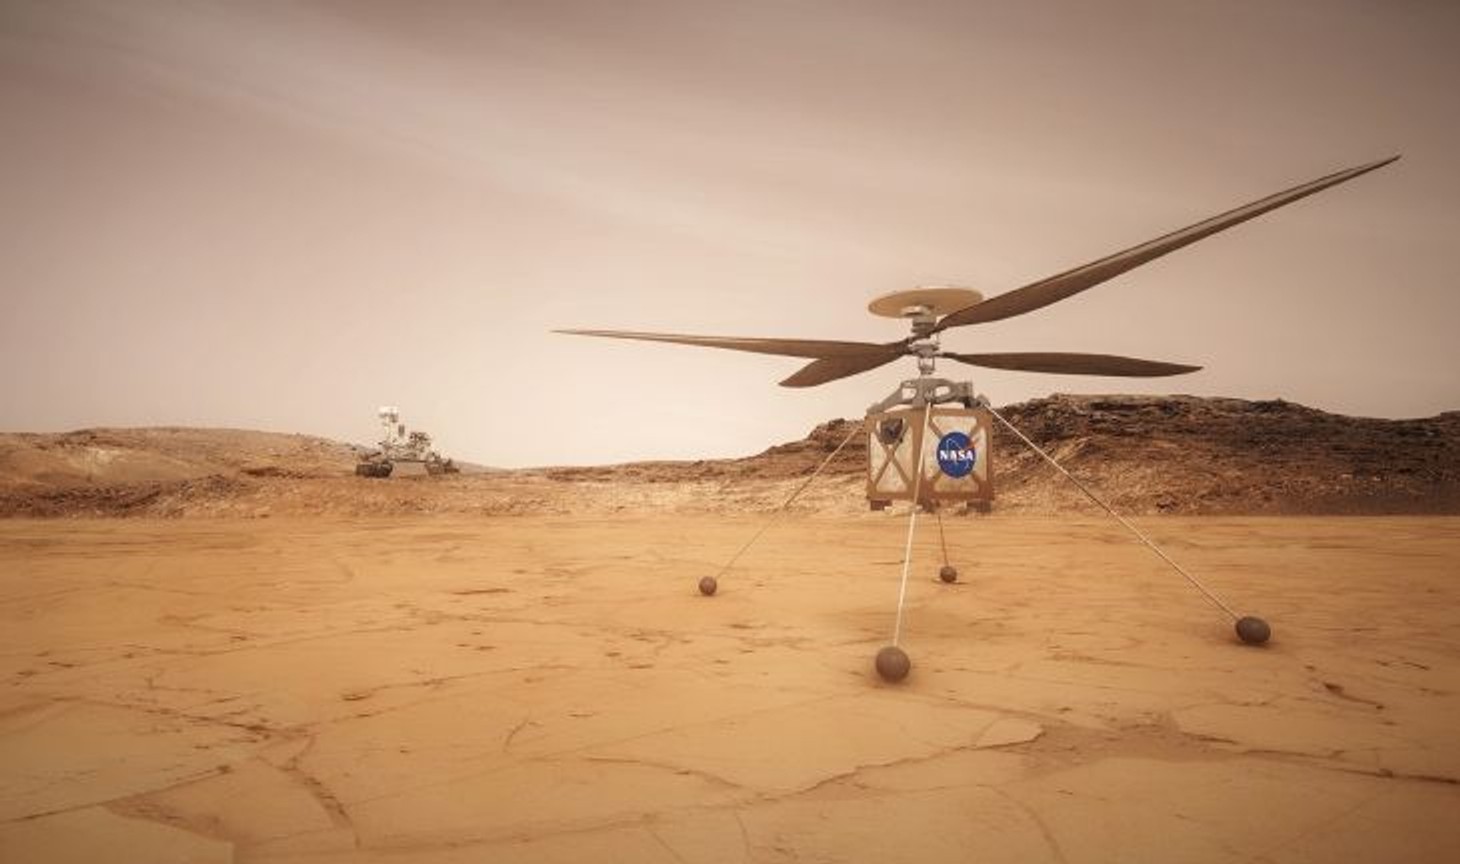 Перший політ вертольота НАСА на Марсі відбудеться 19 квітня